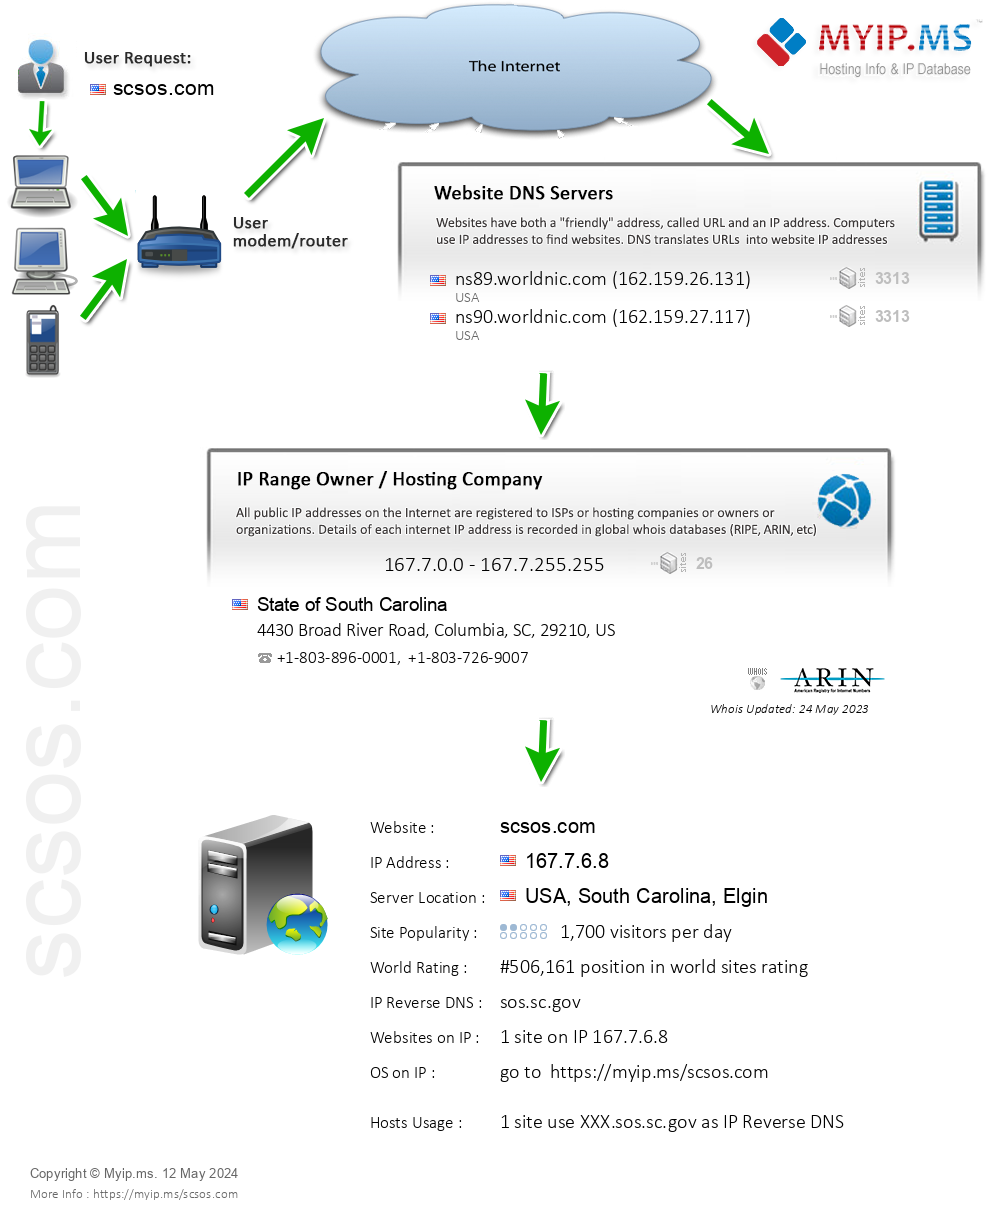 Scsos.com - Website Hosting Visual IP Diagram